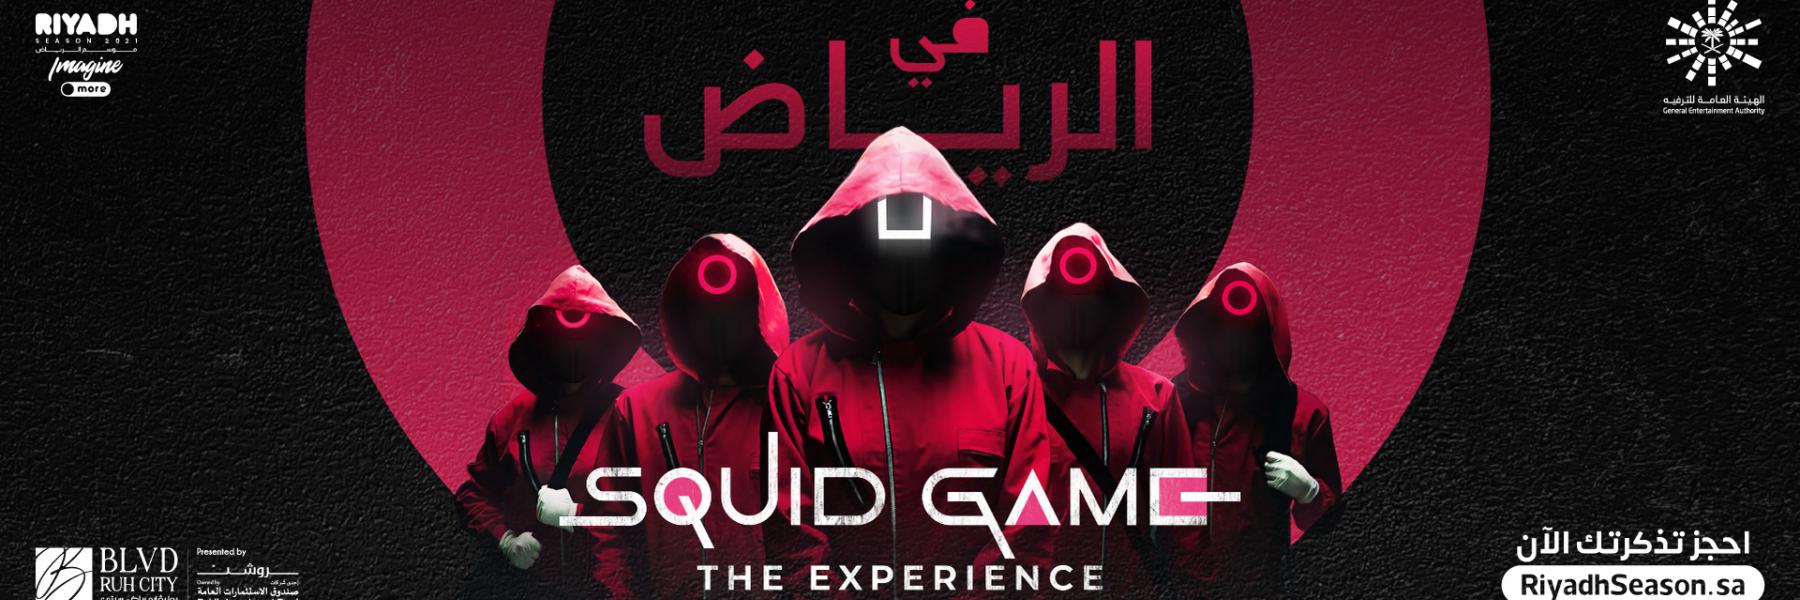 squid game موسم الرياض